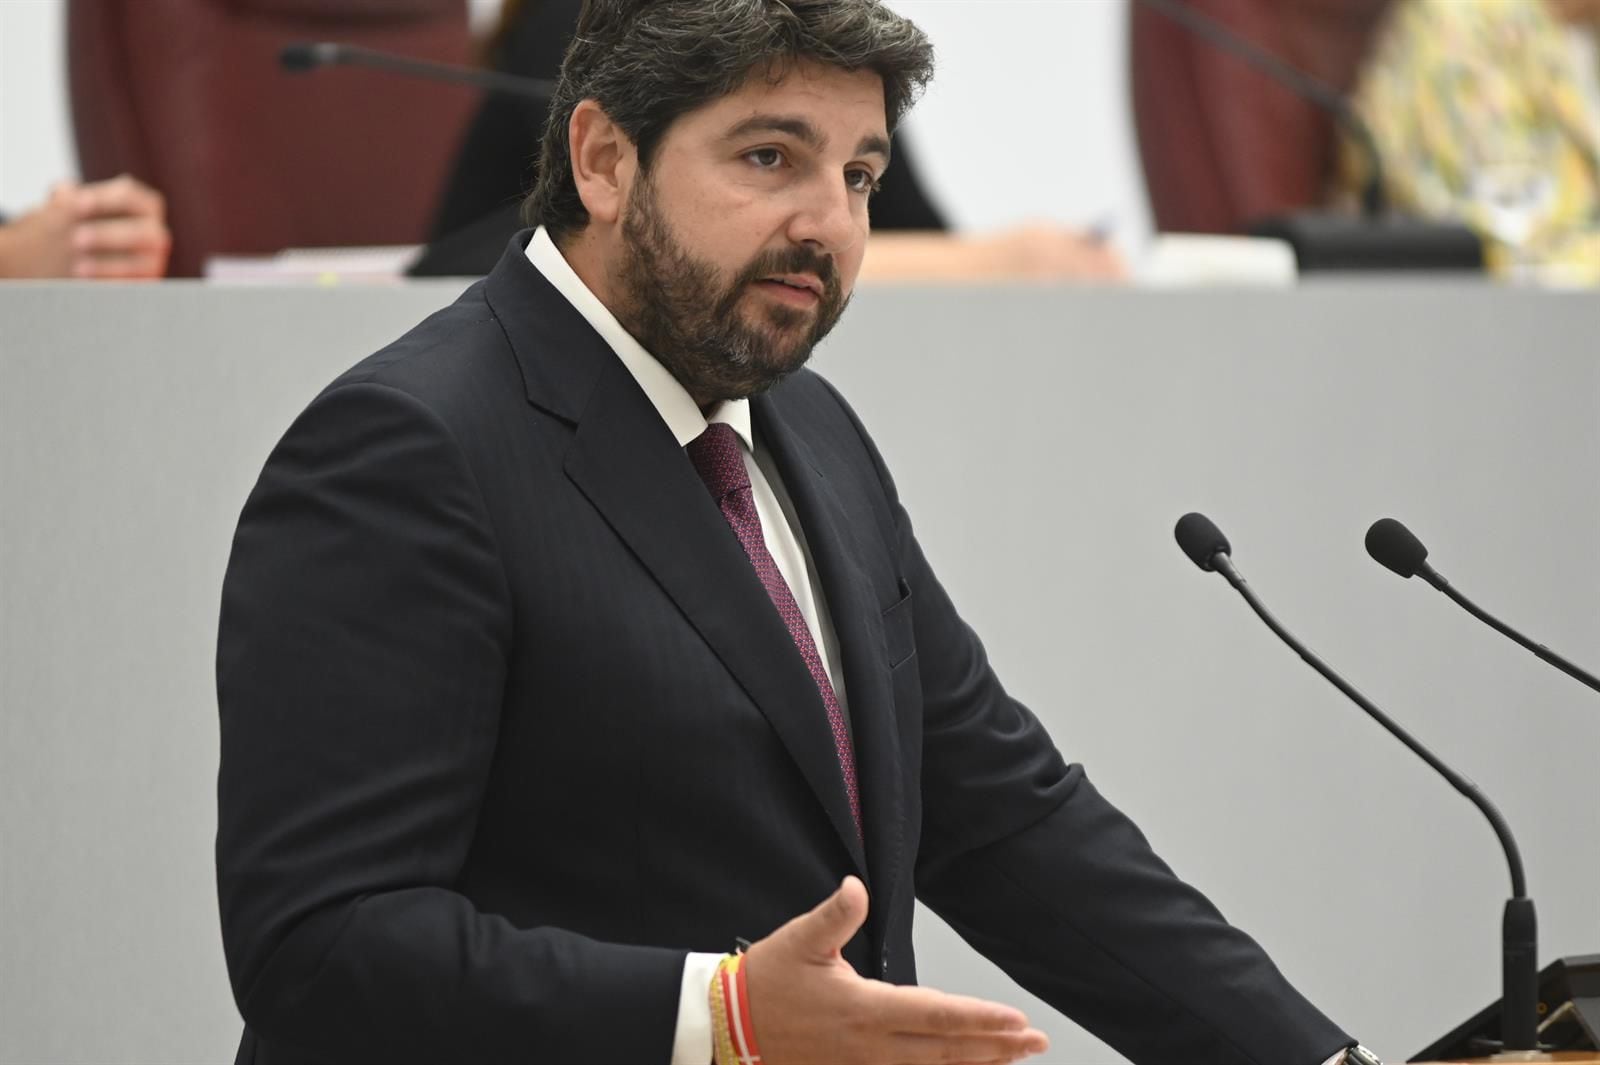 El presidente en funciones de Murcia, Fernando López Miras.
Martín C - Europa Press
